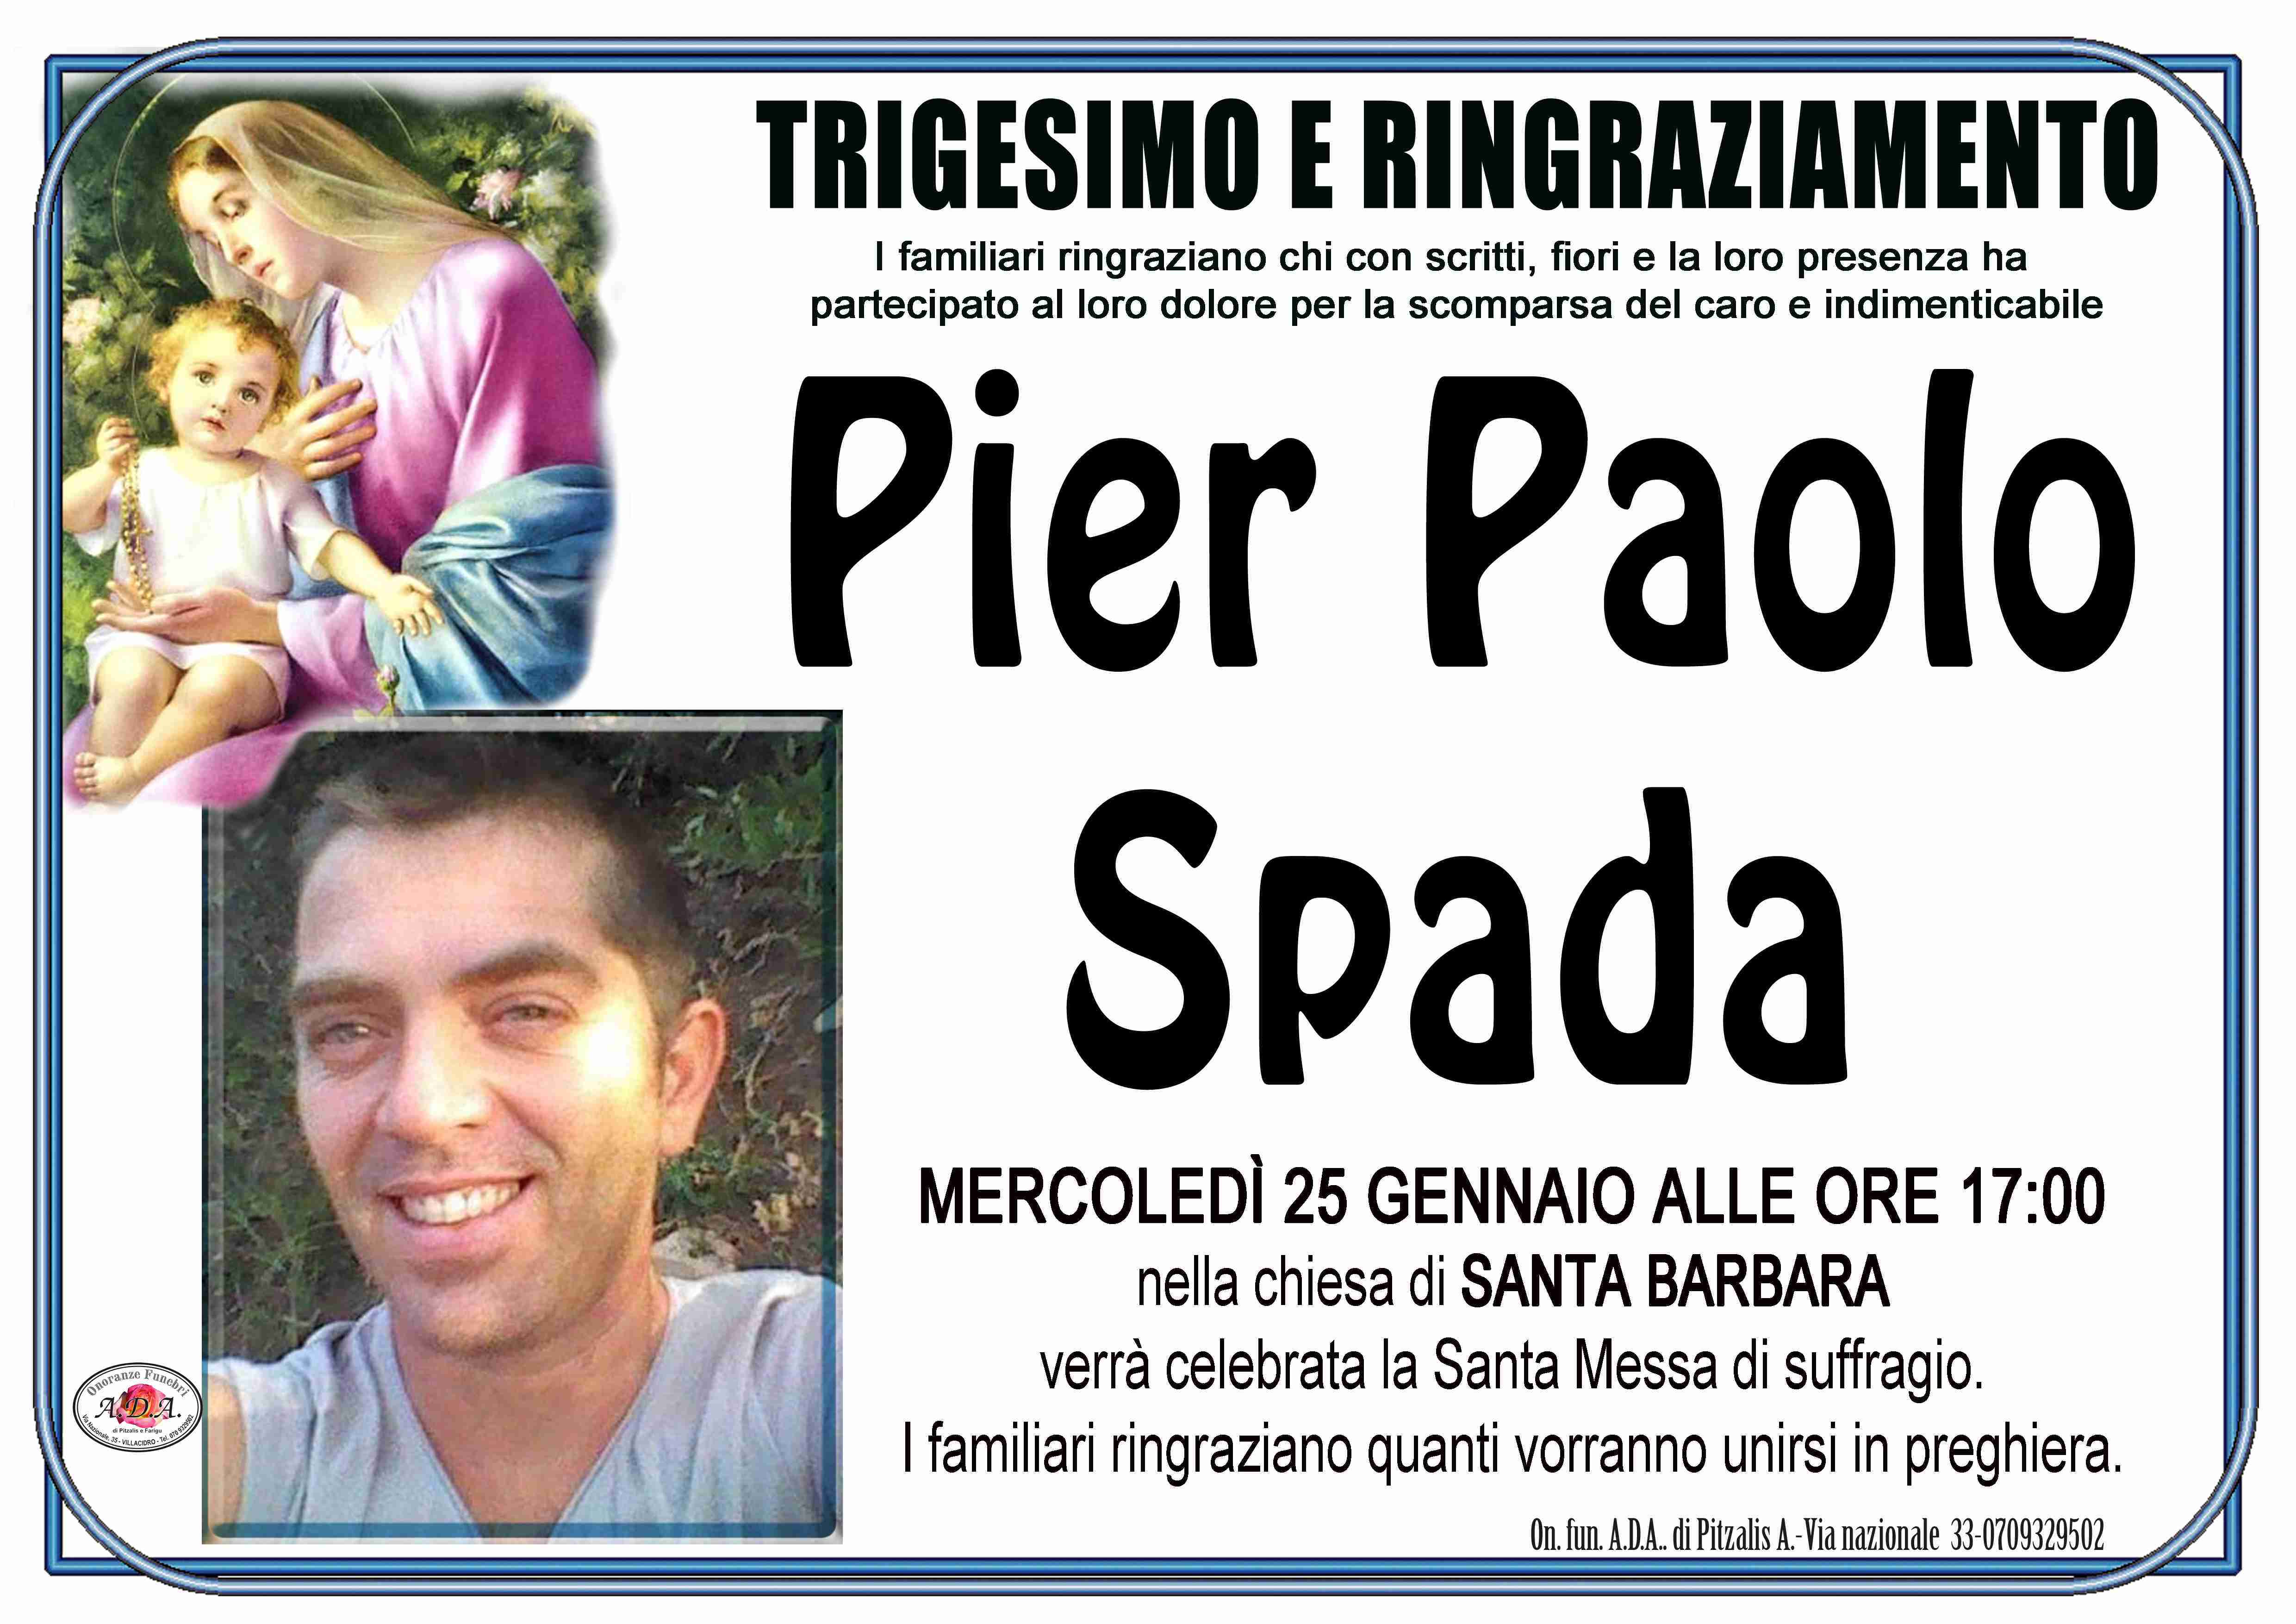 Pier Paolo Spada